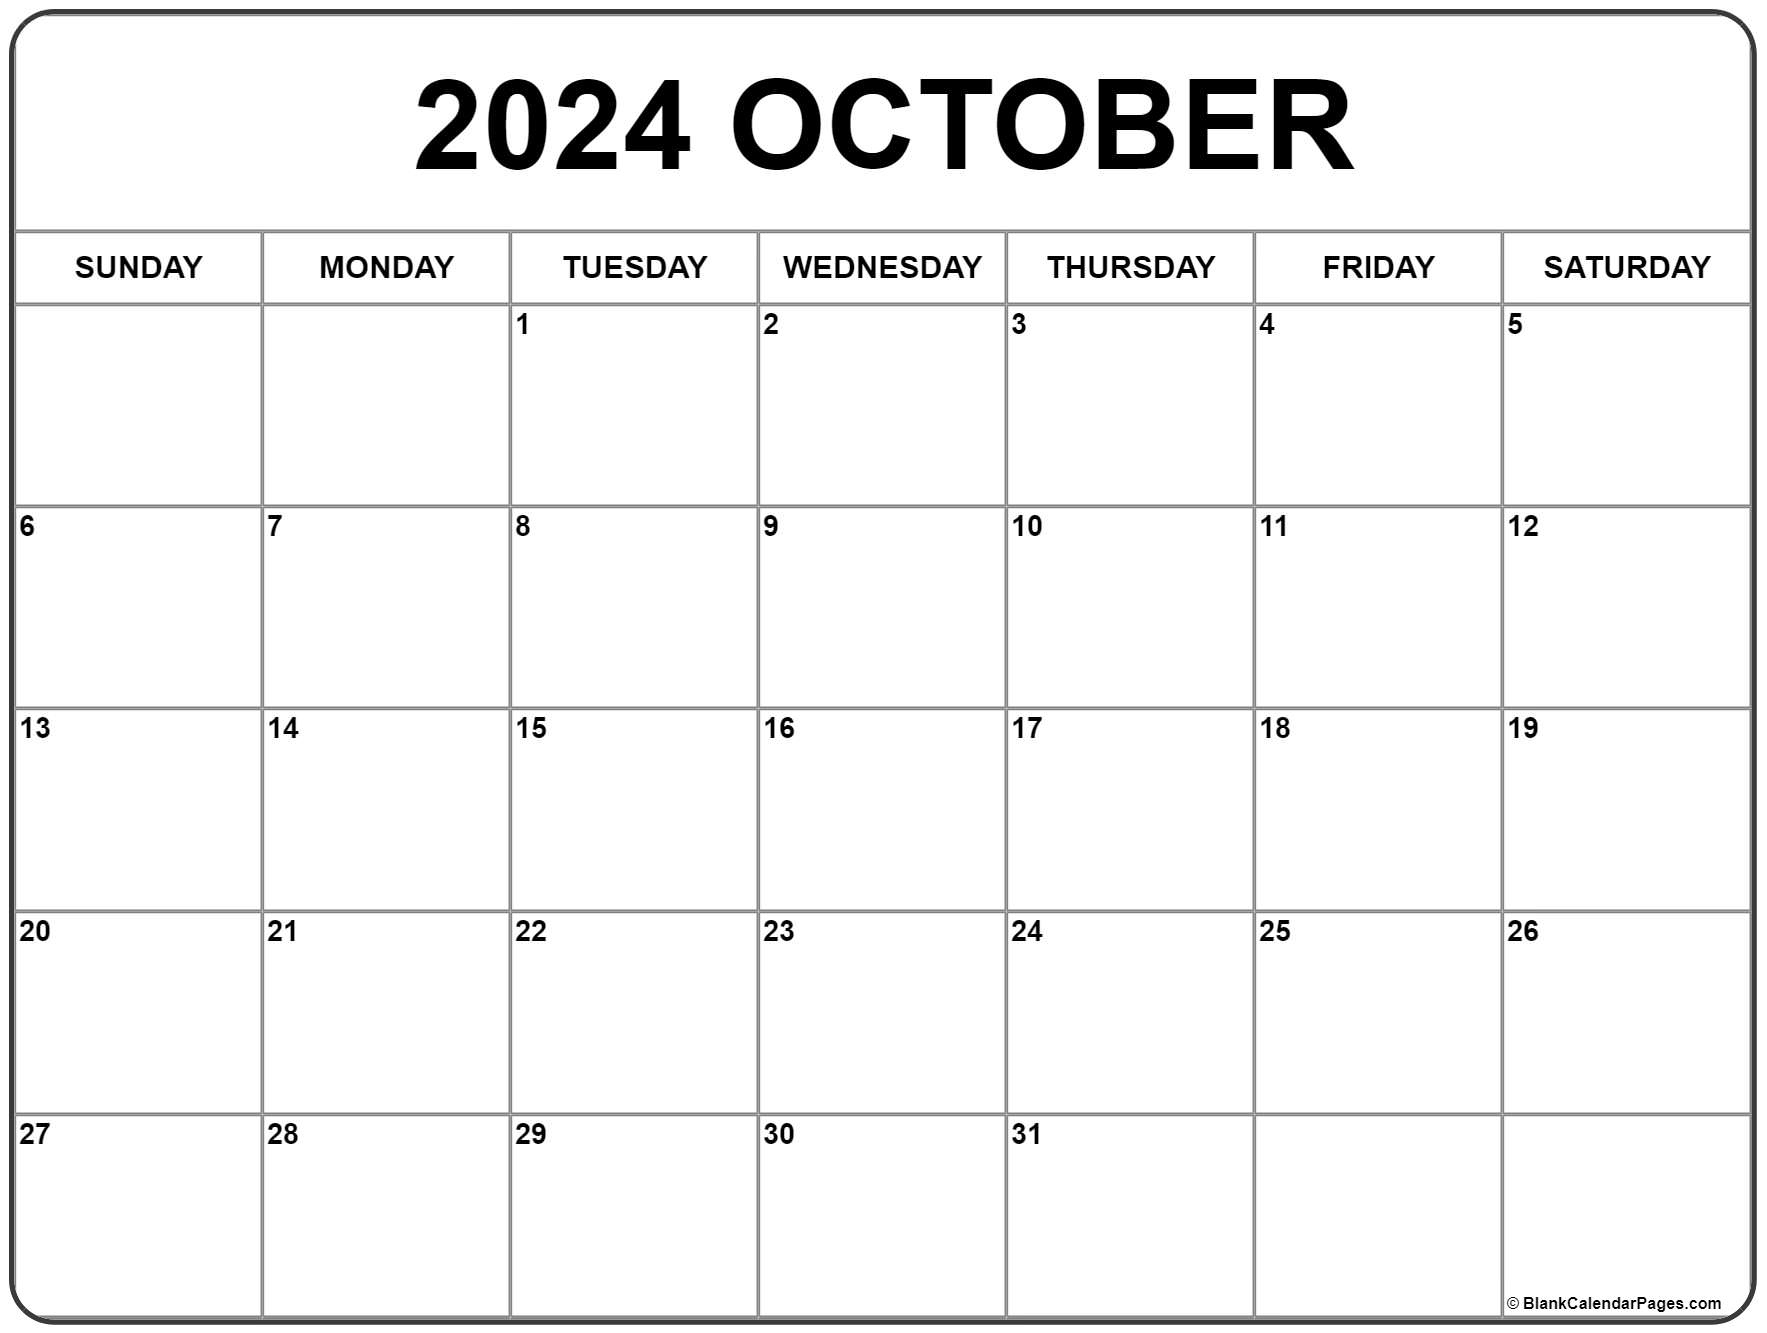 October 2024 Calendar | Free Printable Calendar regarding Free Printable Blank Calendar October 2024